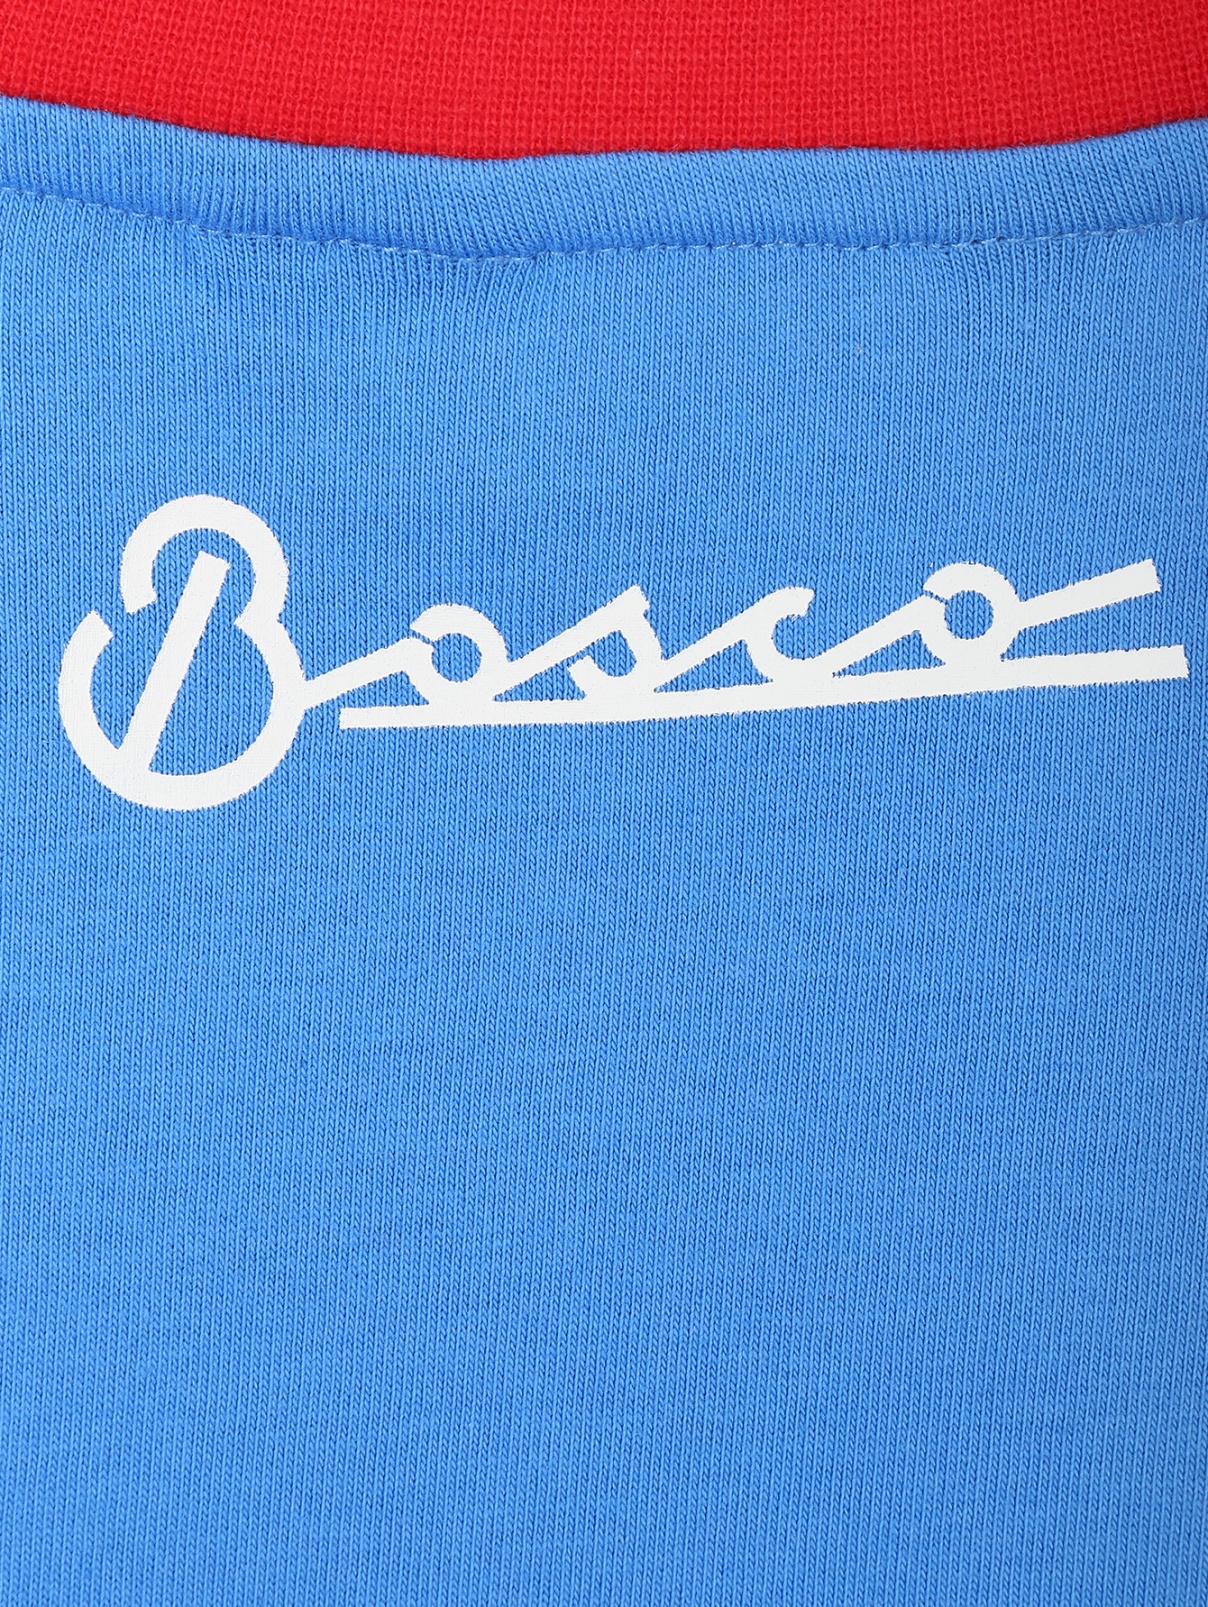 Лого на одежде. Логотип одежды. Футболка Боско спорт. Нашивка Боско. Рельефный логотип на одежду.